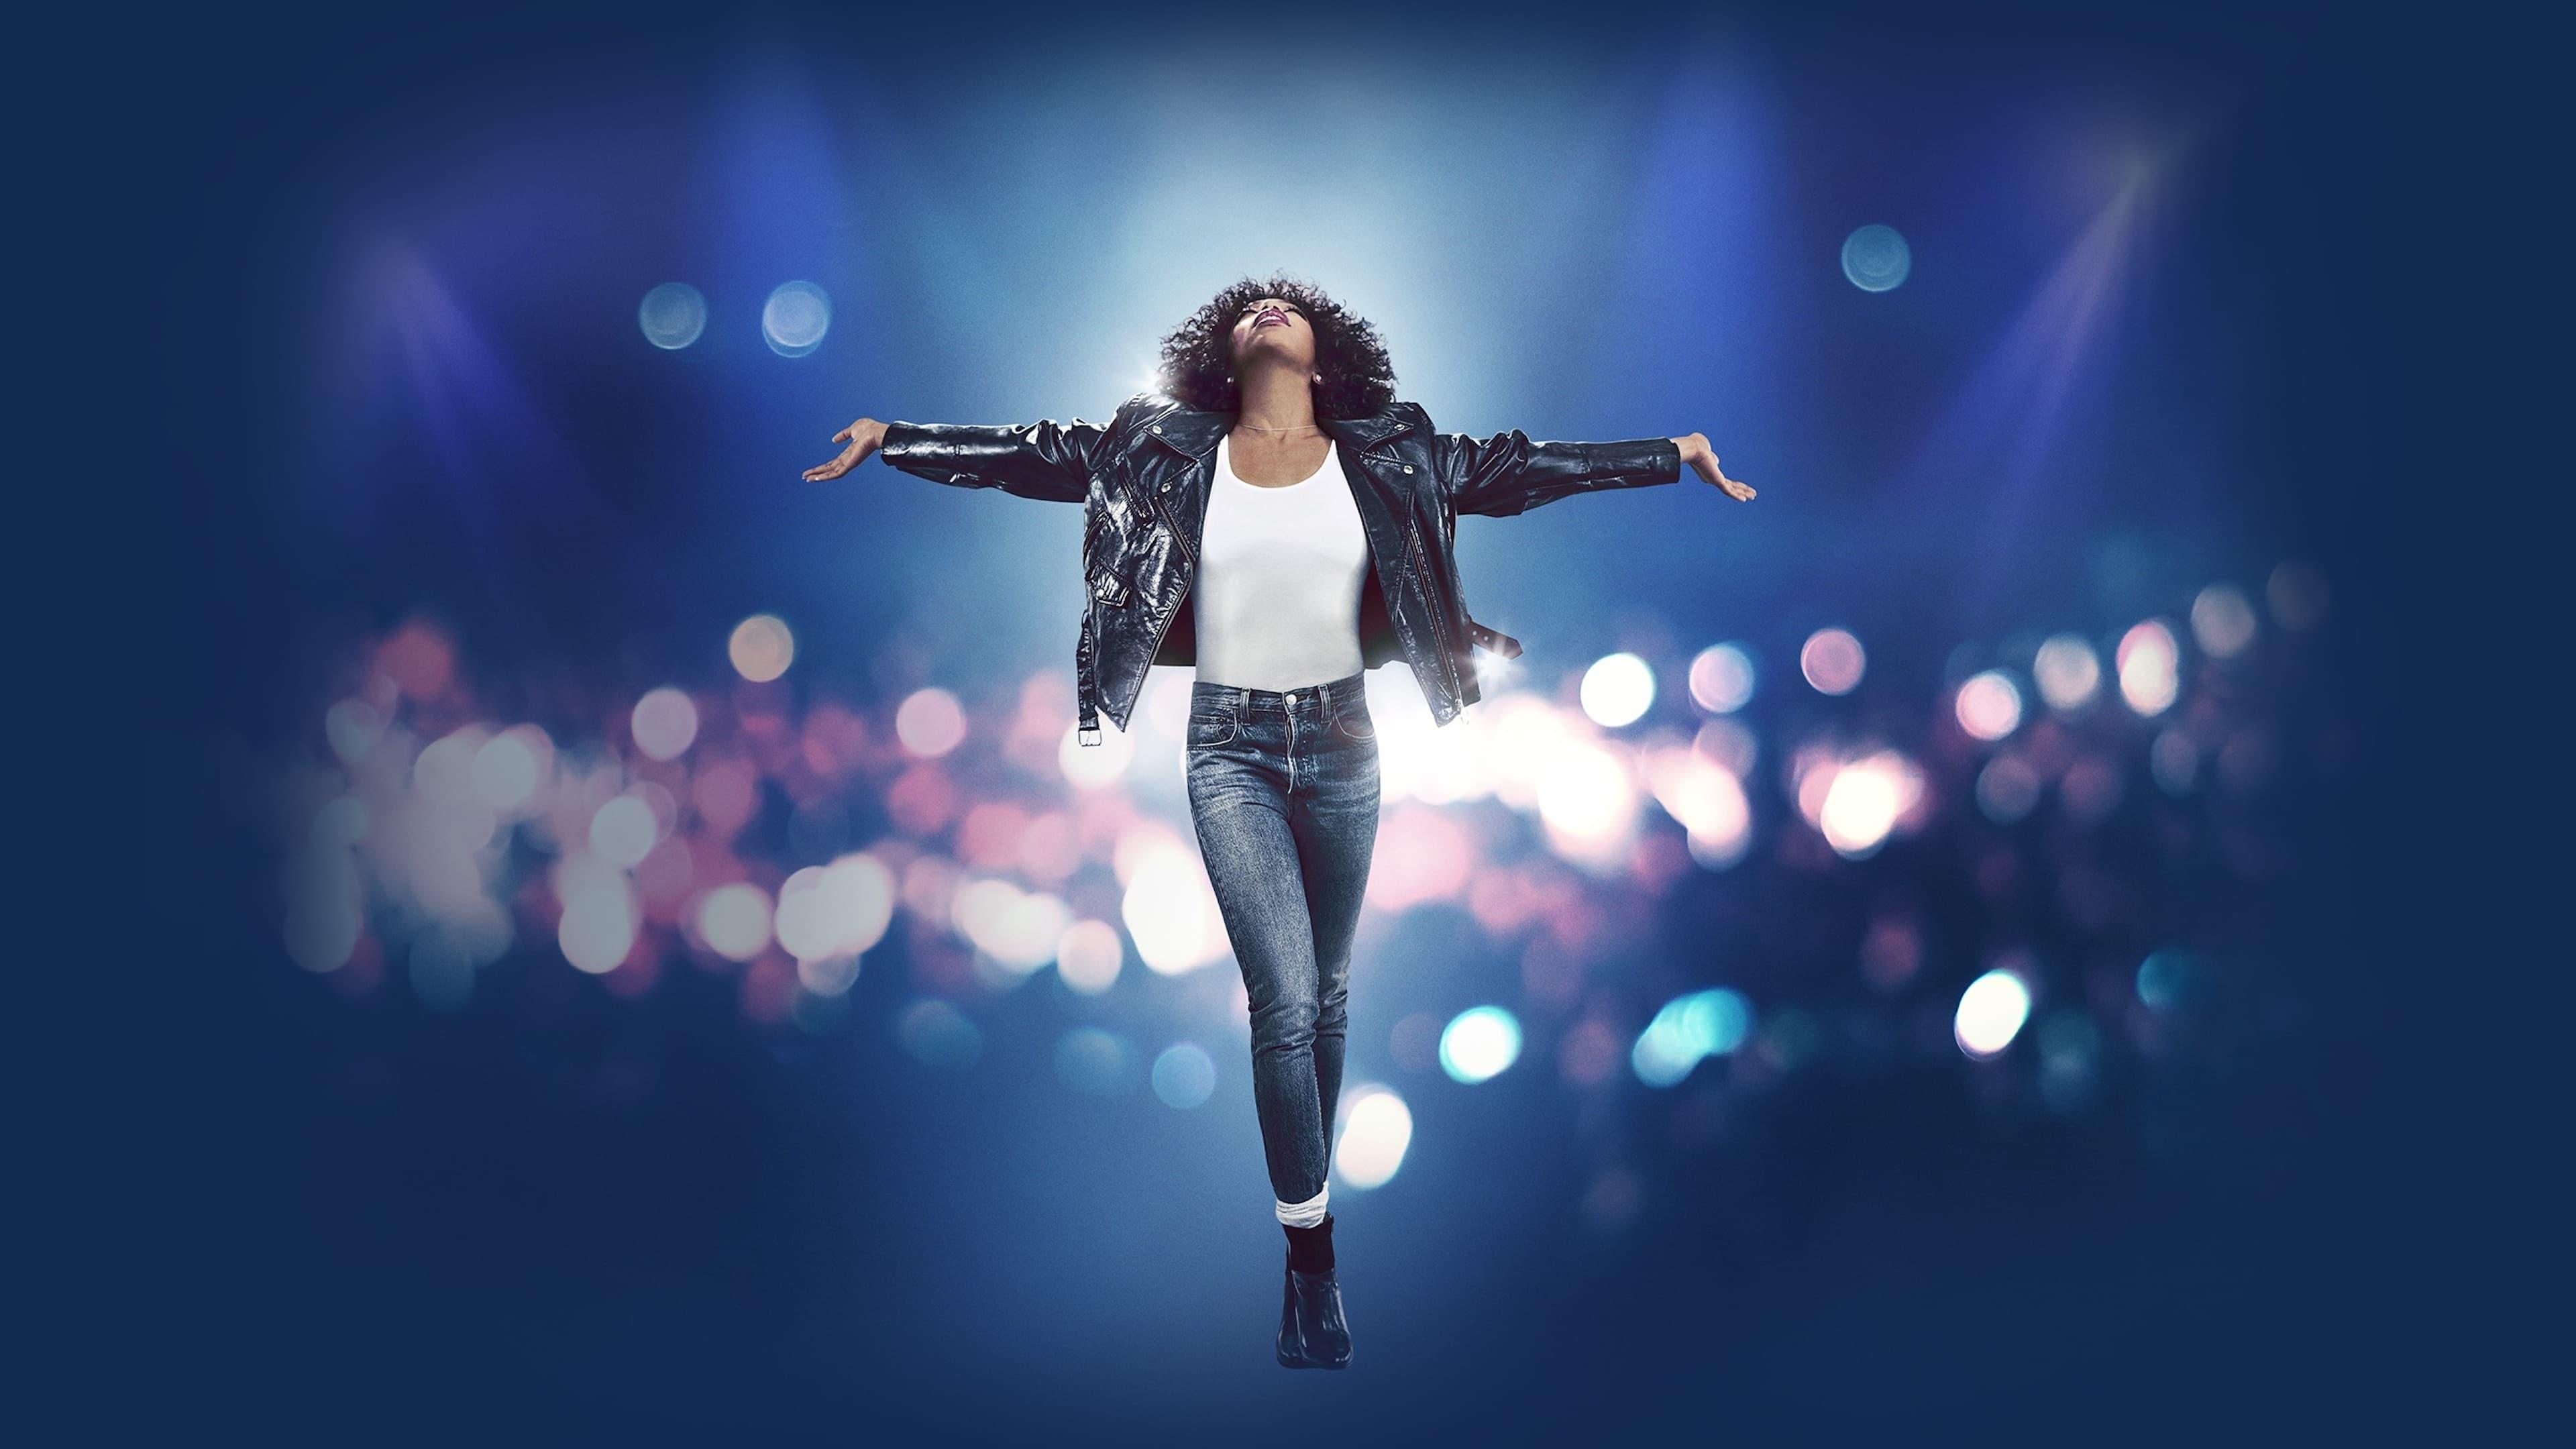 Whitney Houston: I Wanna Dance with Somebody backdrop